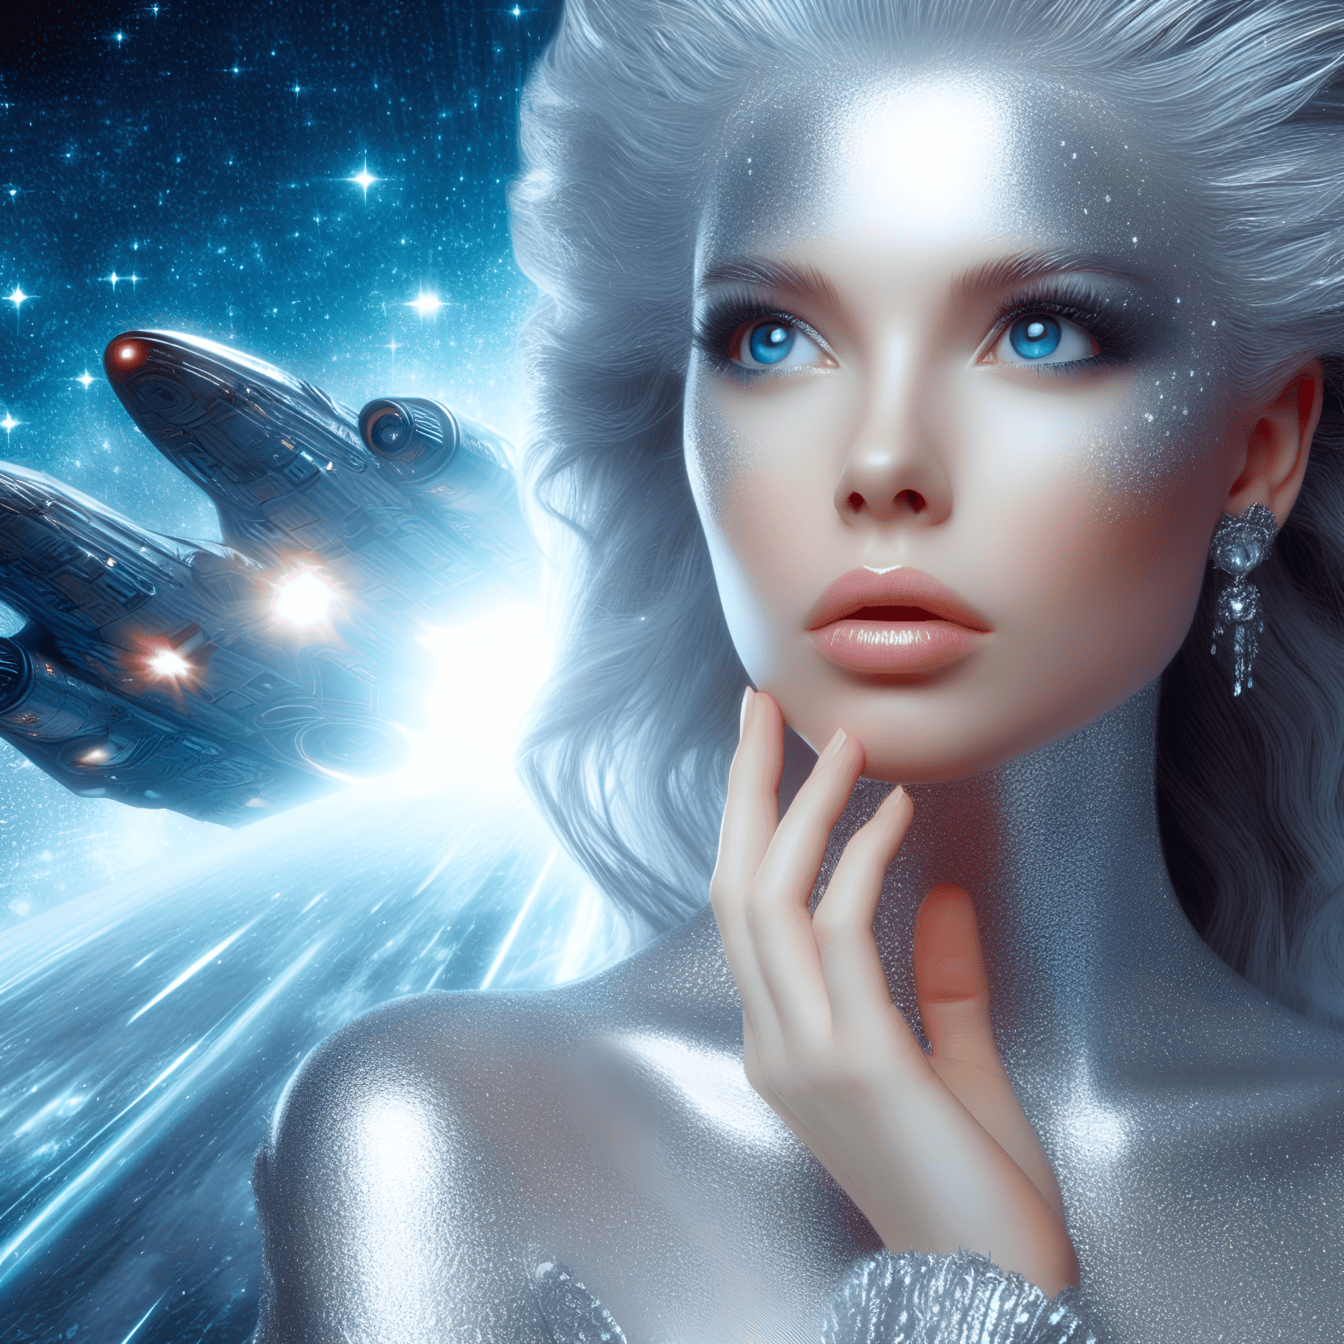 Portretul unei zeițe a unei ființe extraterestre superioare, cu o navă spațială în fundal